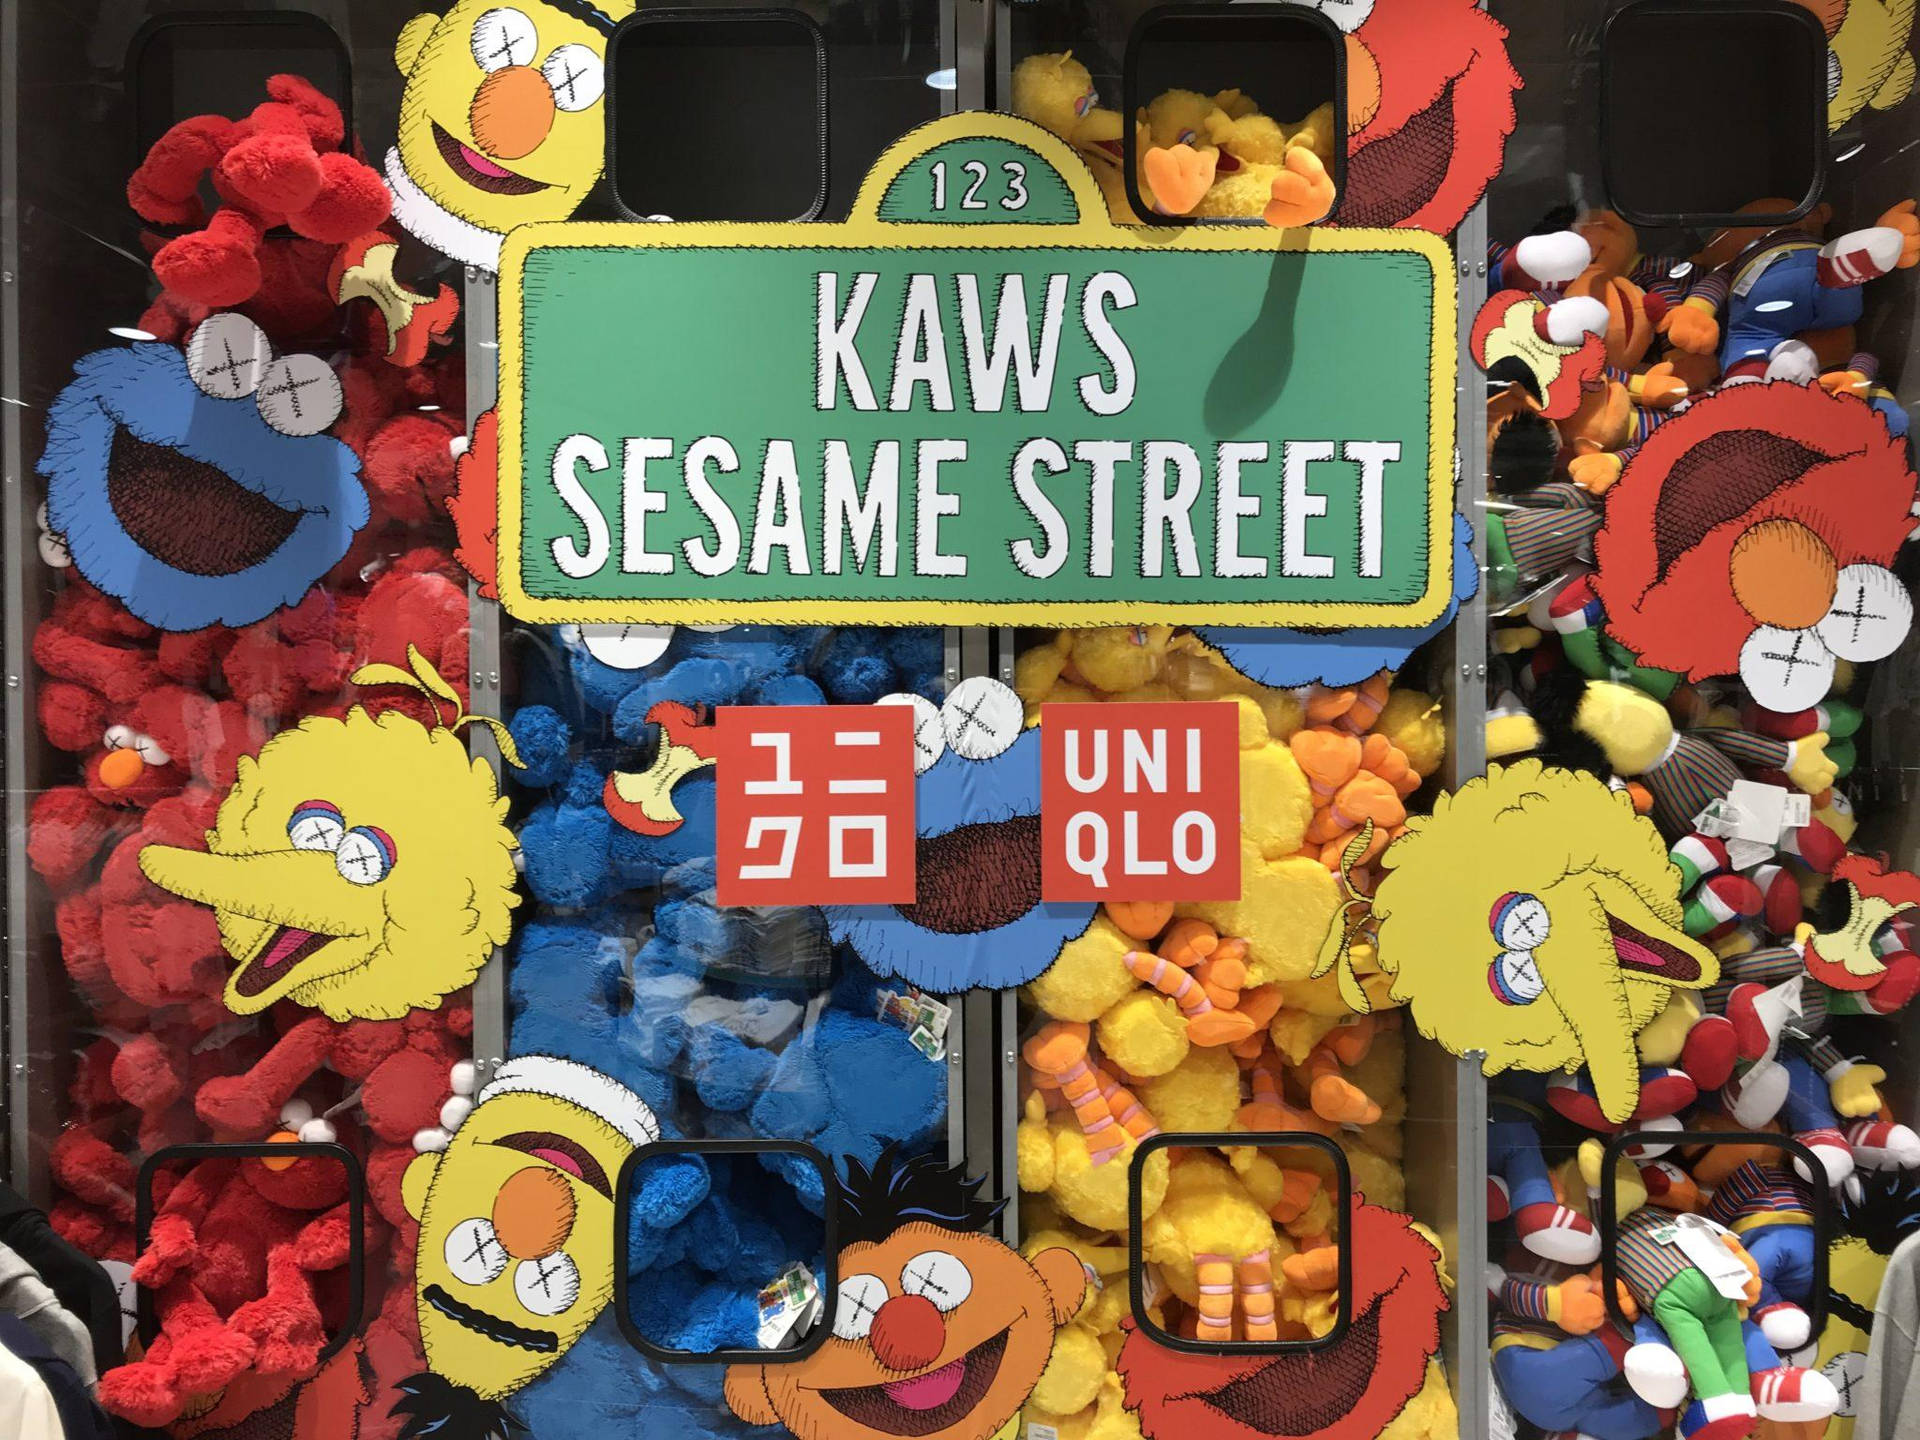 Uniqlo Sesame Street Illustration